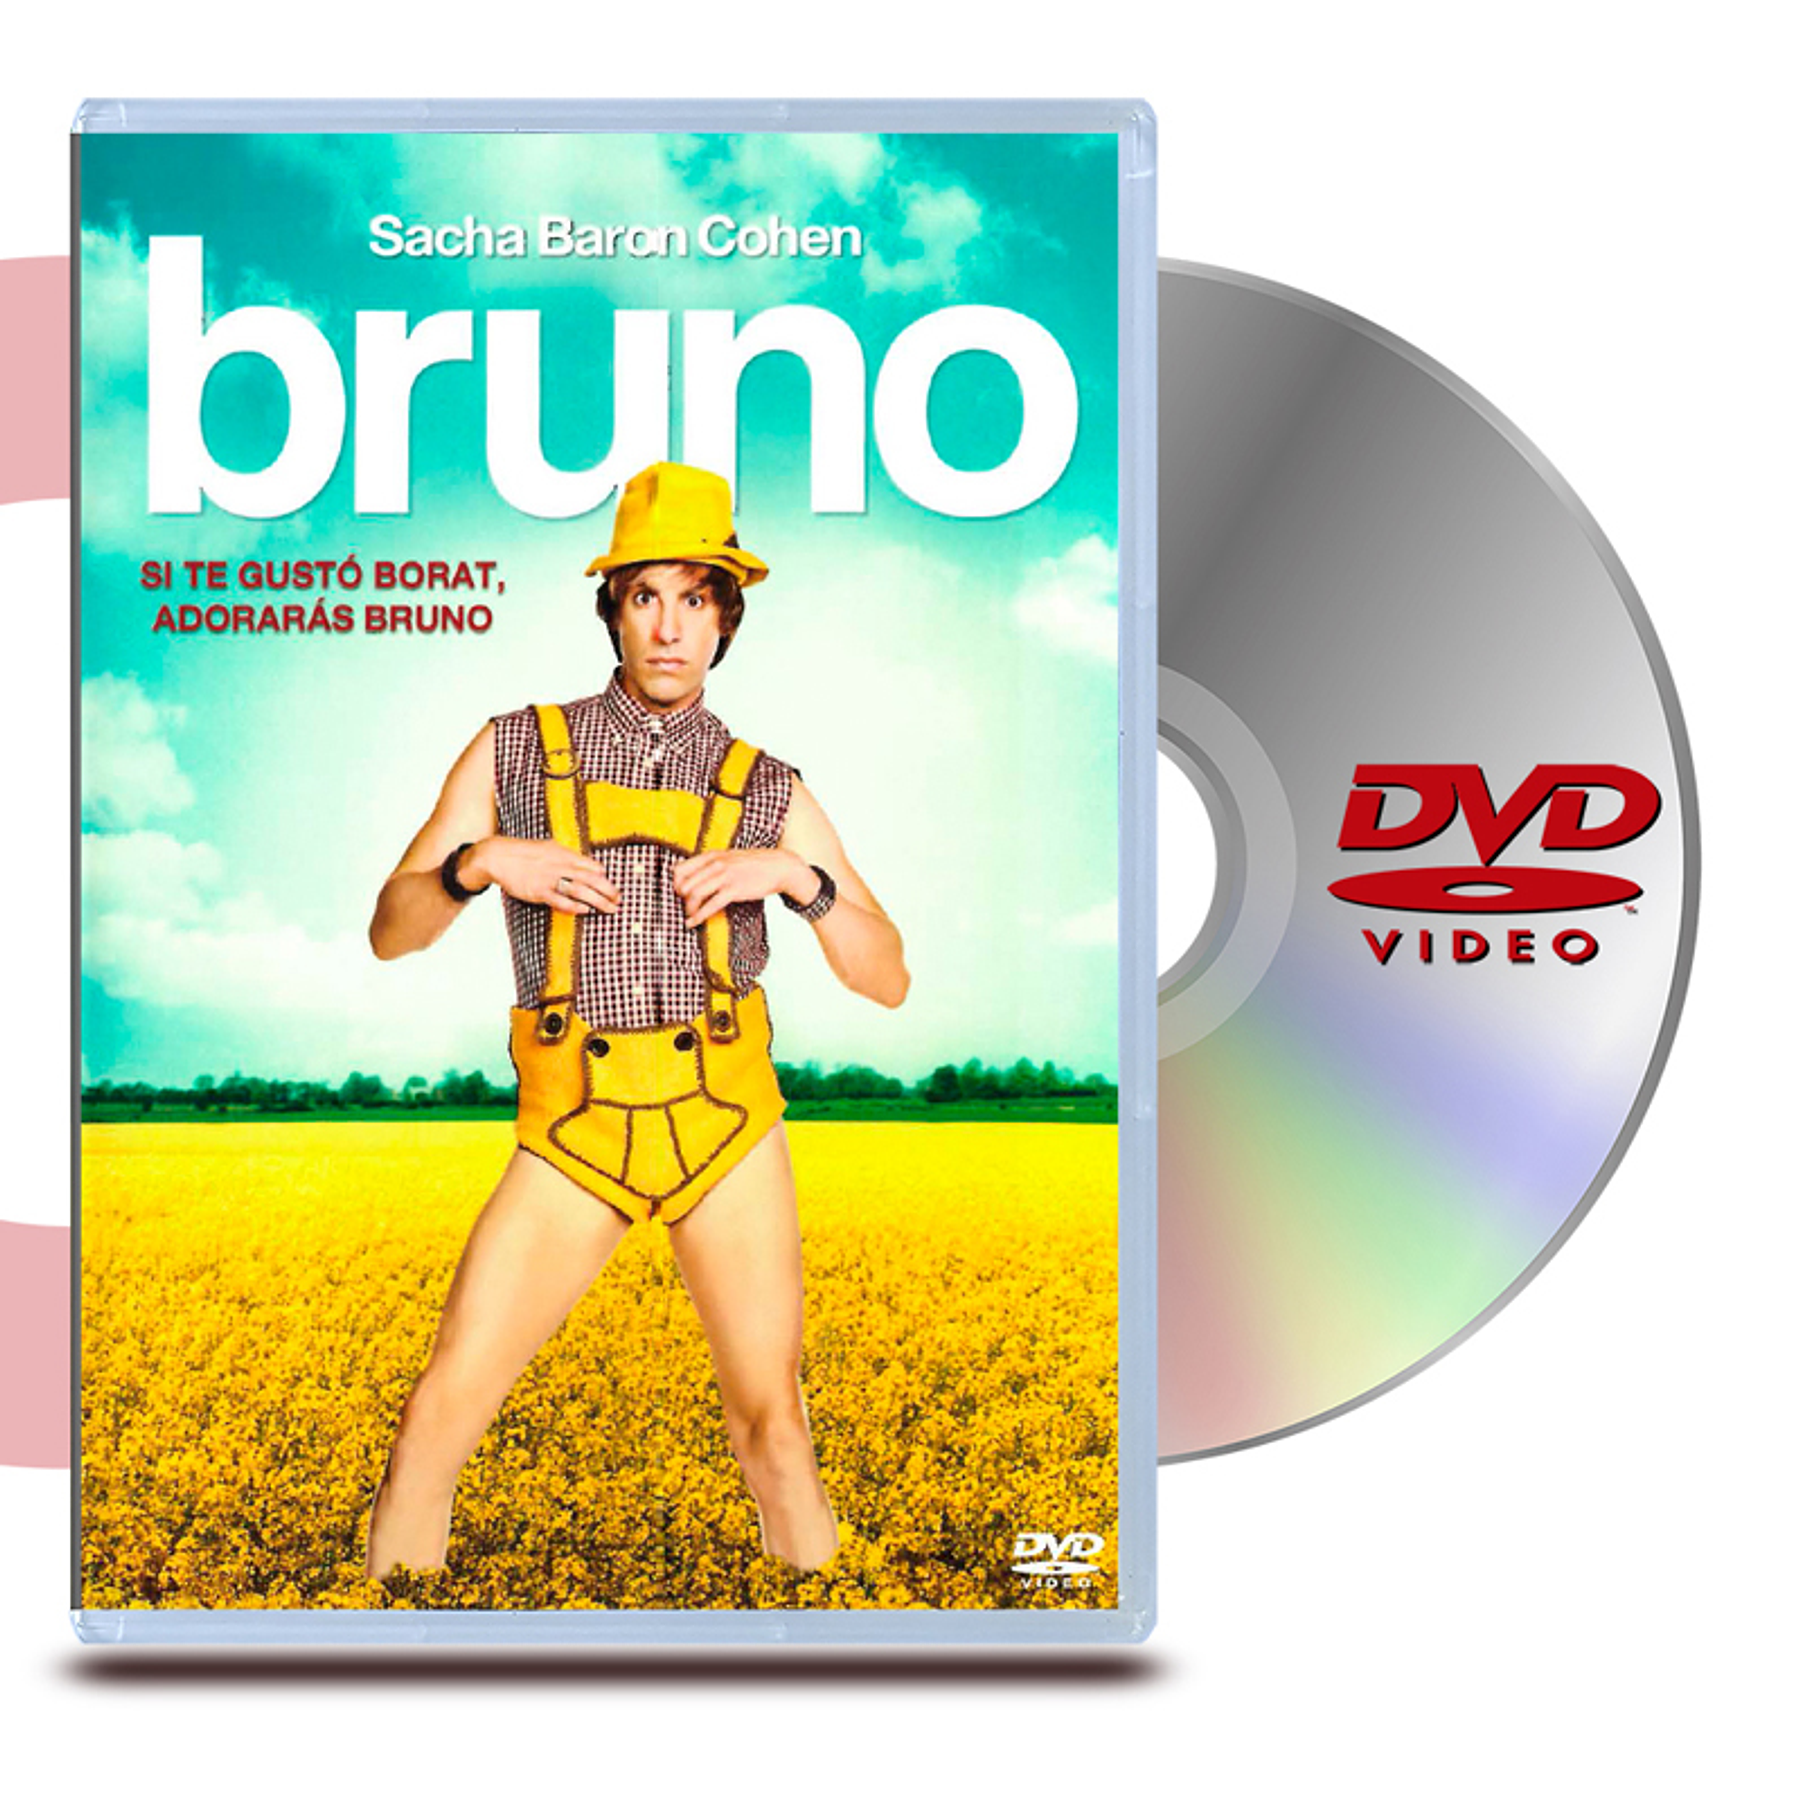 DVD Bruno